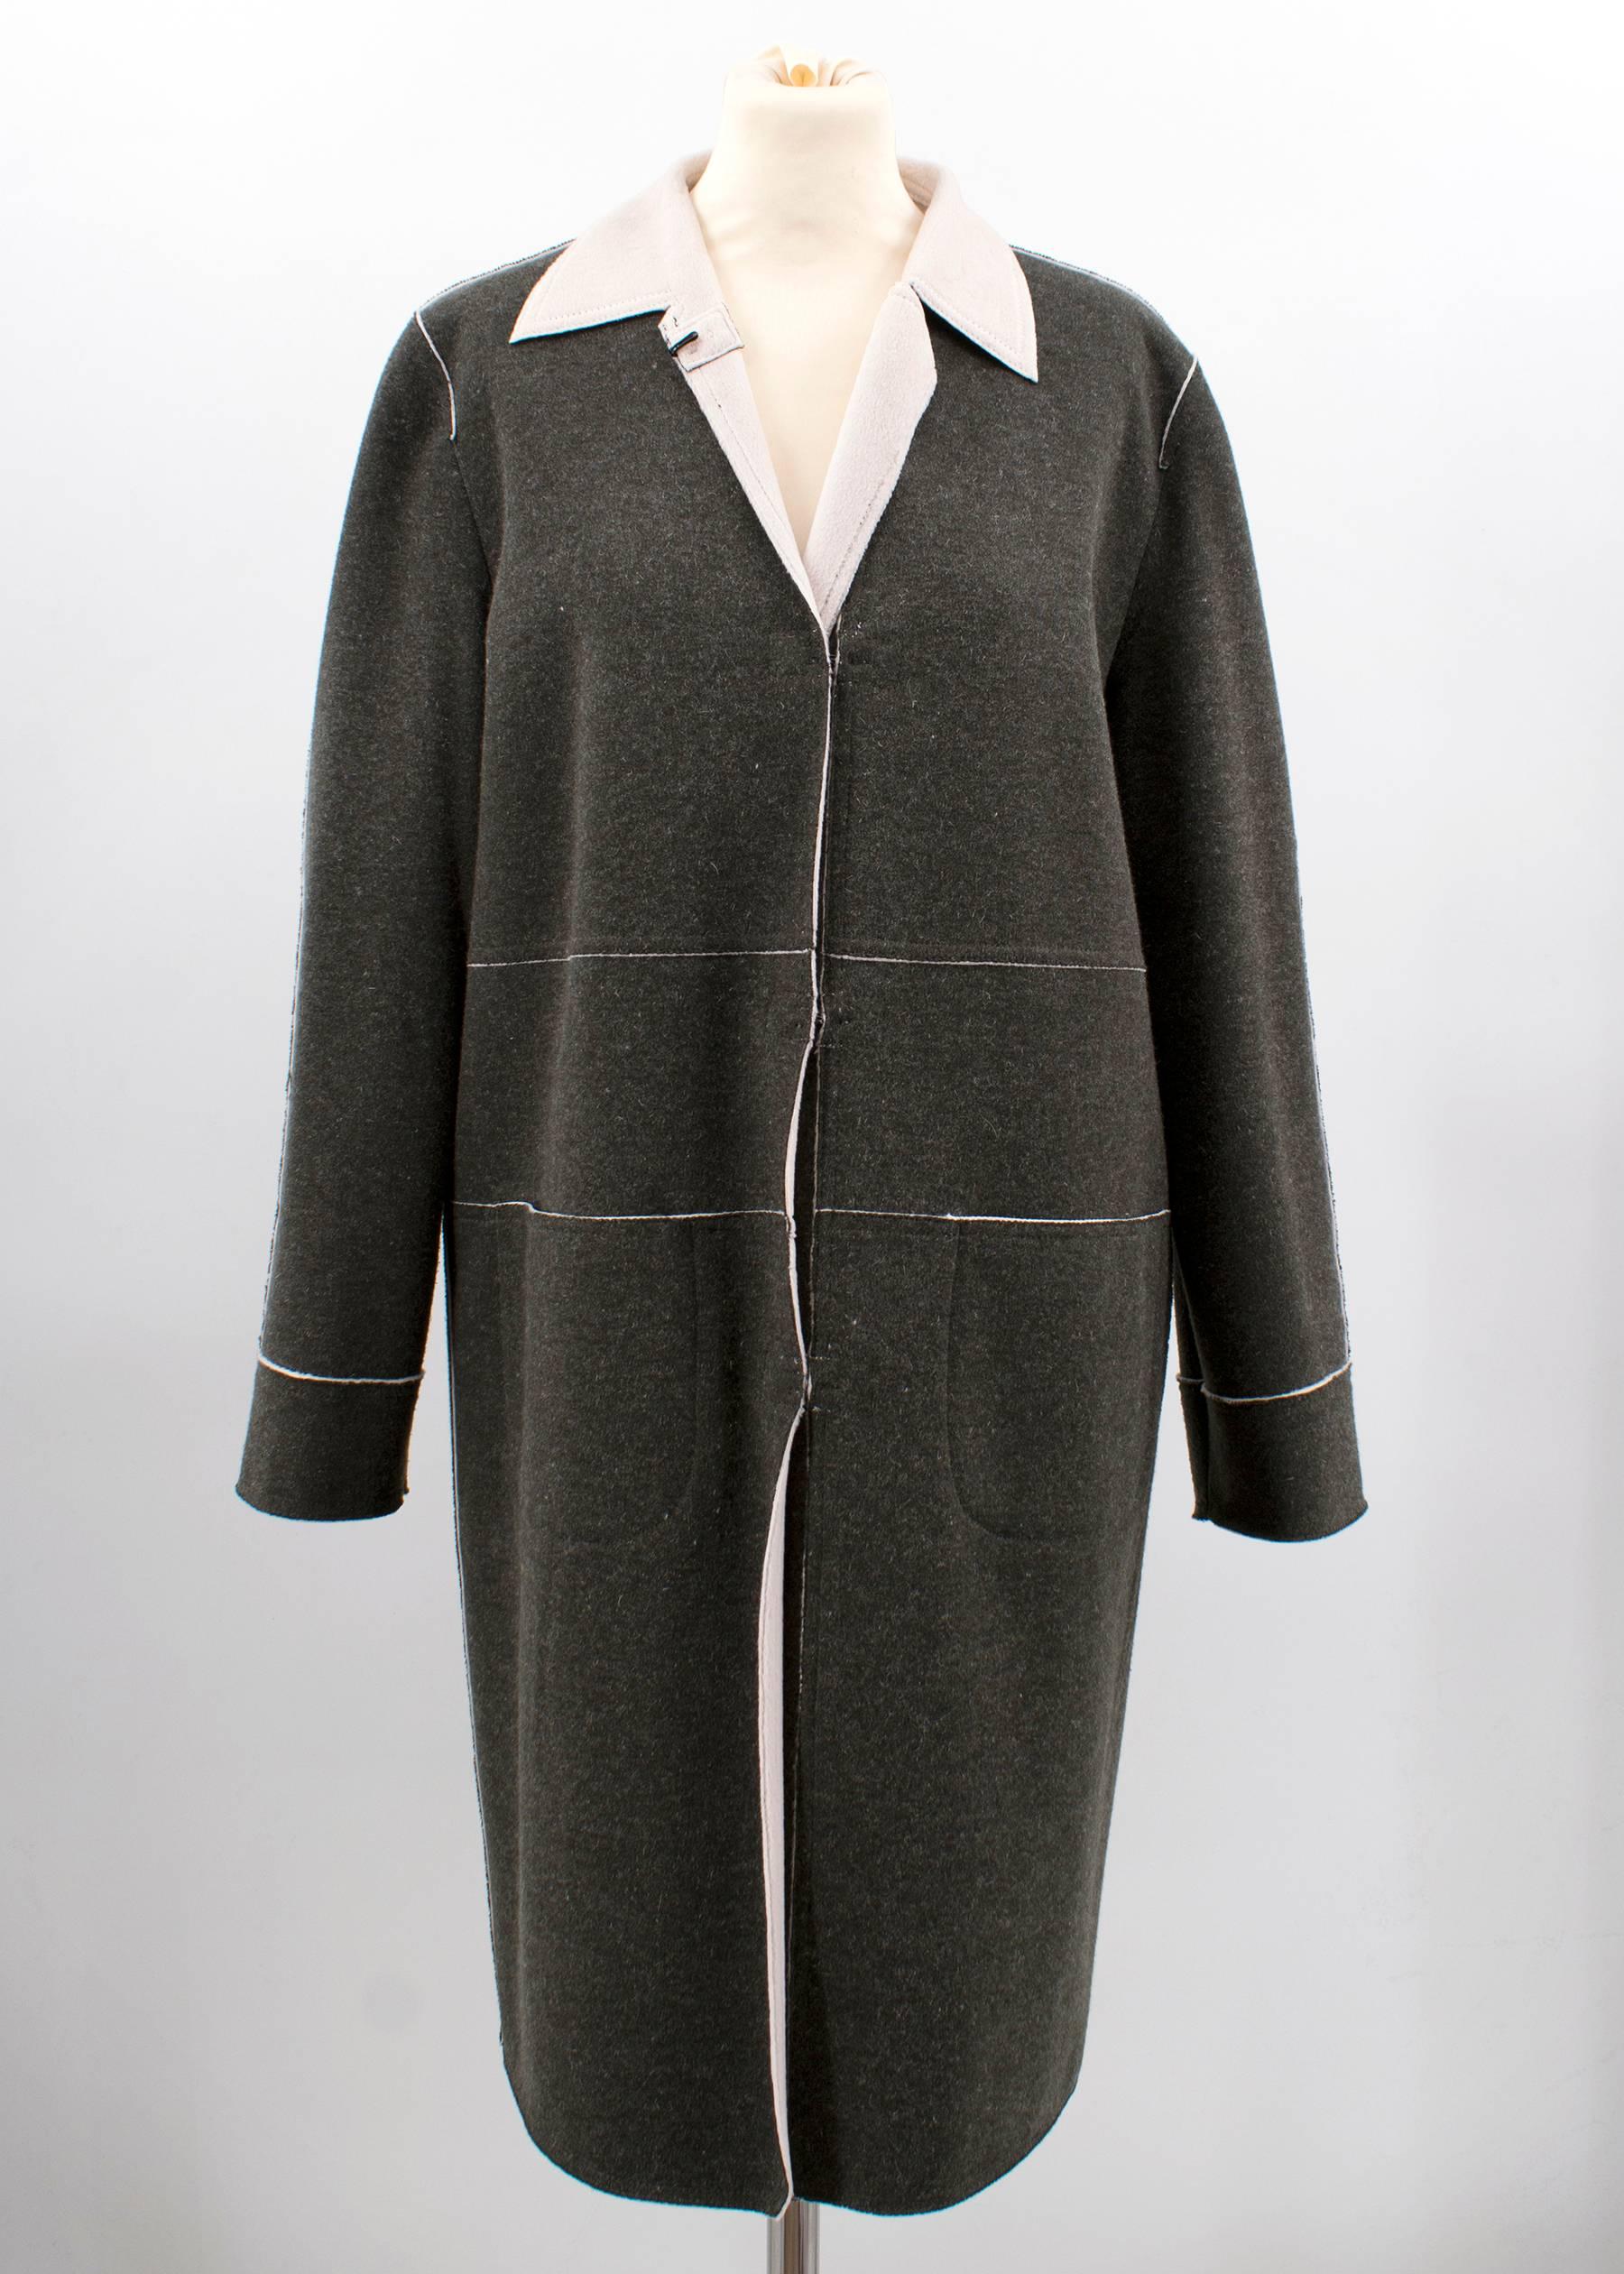 Fendi grey long coat
- contrasting lapels
- clasp fastening 

Size IT 42

Measurements: 
Shoulders: 43cm
Length: 102cm

Condition: 9.5cm 